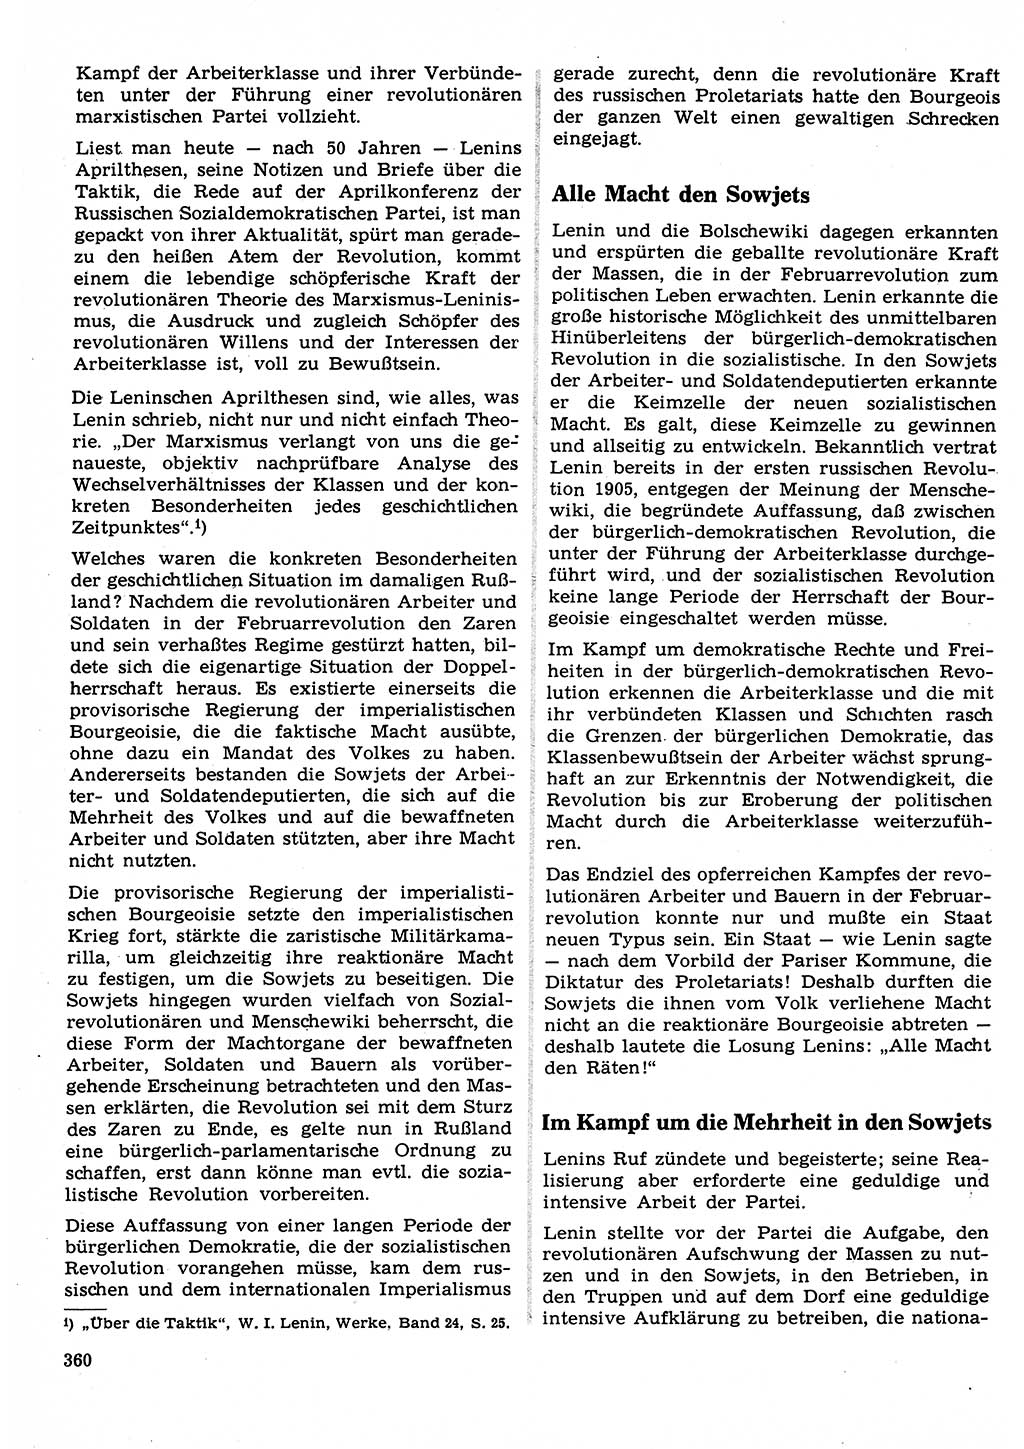 Neuer Weg (NW), Organ des Zentralkomitees (ZK) der SED (Sozialistische Einheitspartei Deutschlands) für Fragen des Parteilebens, 22. Jahrgang [Deutsche Demokratische Republik (DDR)] 1967, Seite 360 (NW ZK SED DDR 1967, S. 360)